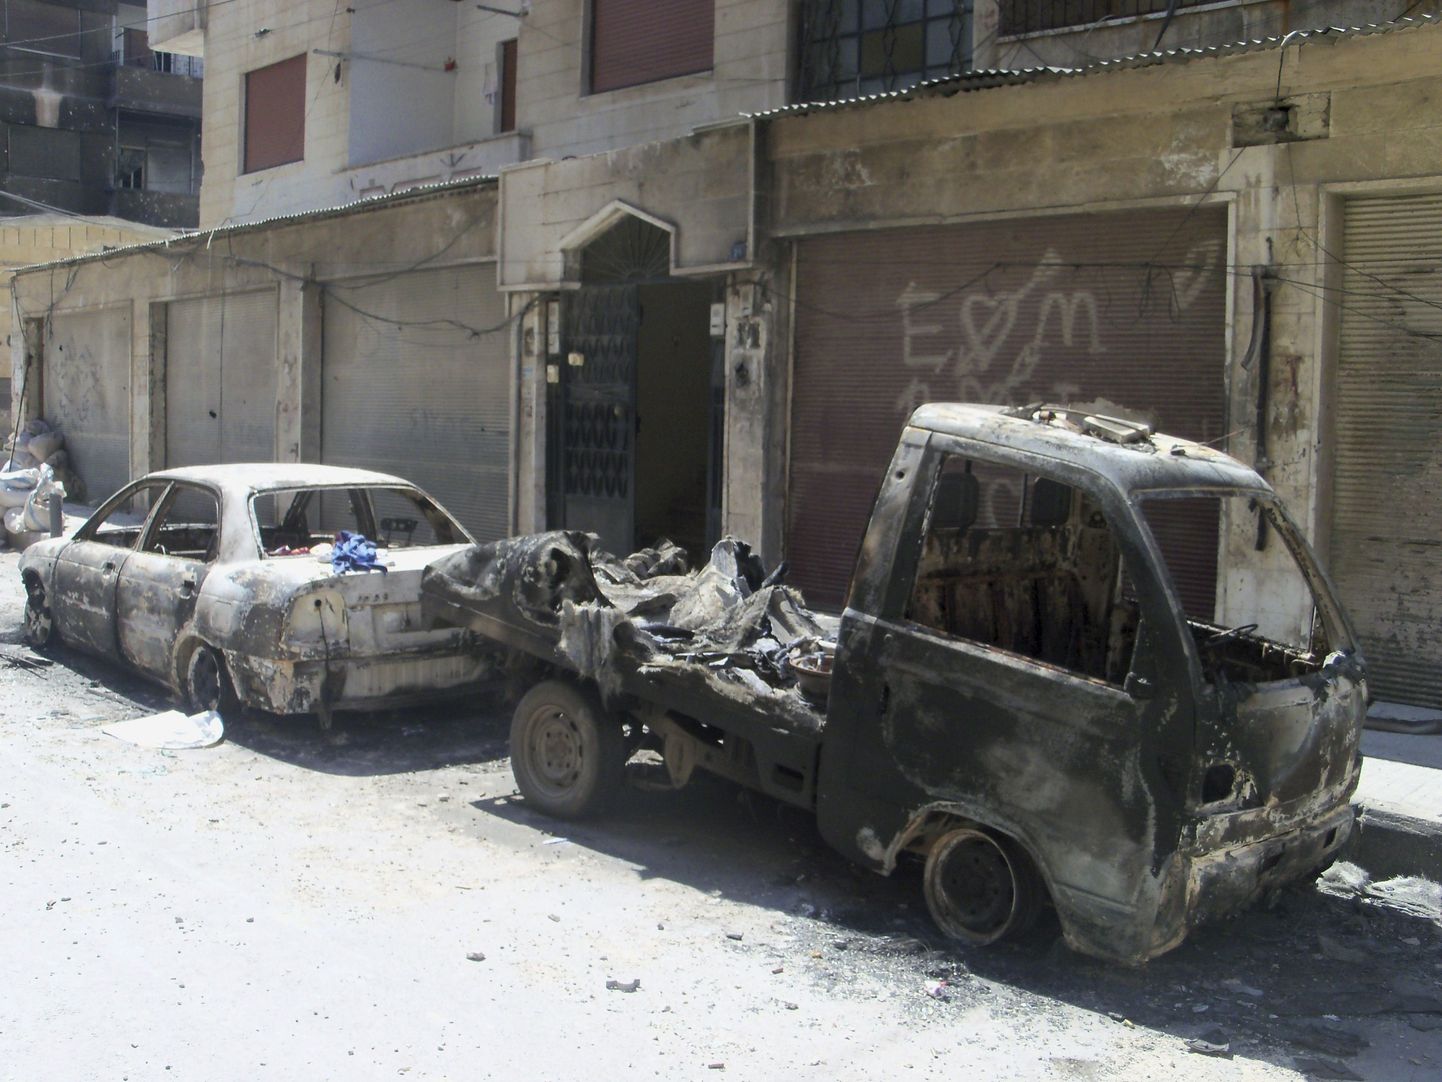 Tänavapilt Homsist Süüriast, mis on tehtud 24. aprilil 2012.